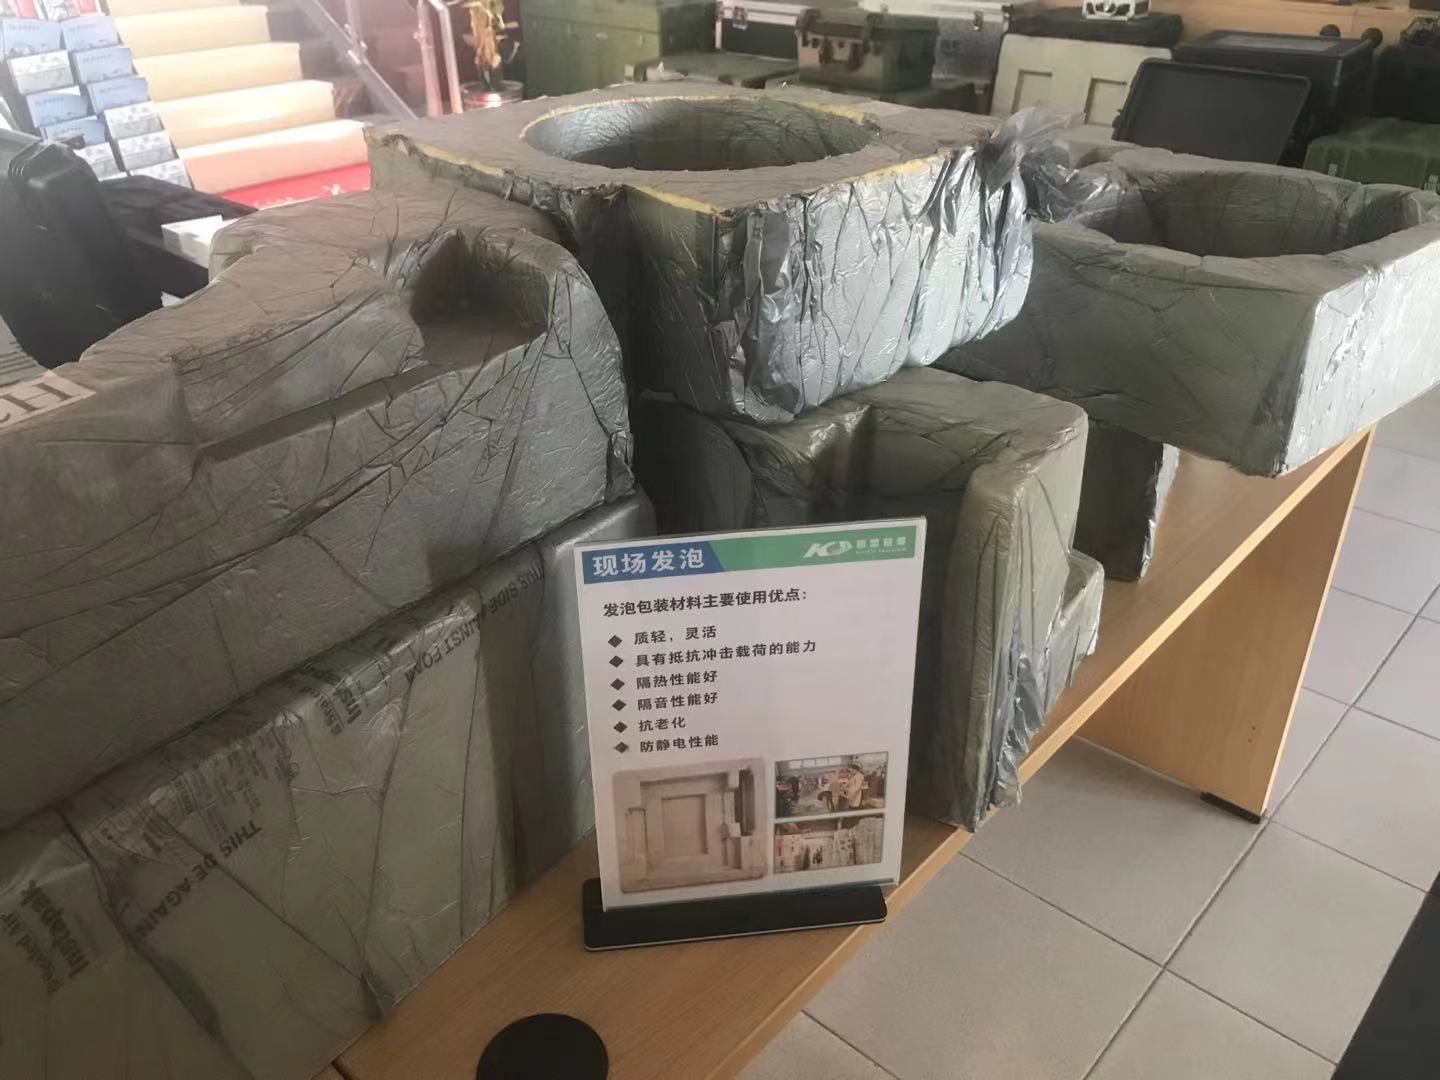 上海凯塑包装材料有限公司将亮相CIPPME上海国际包装展